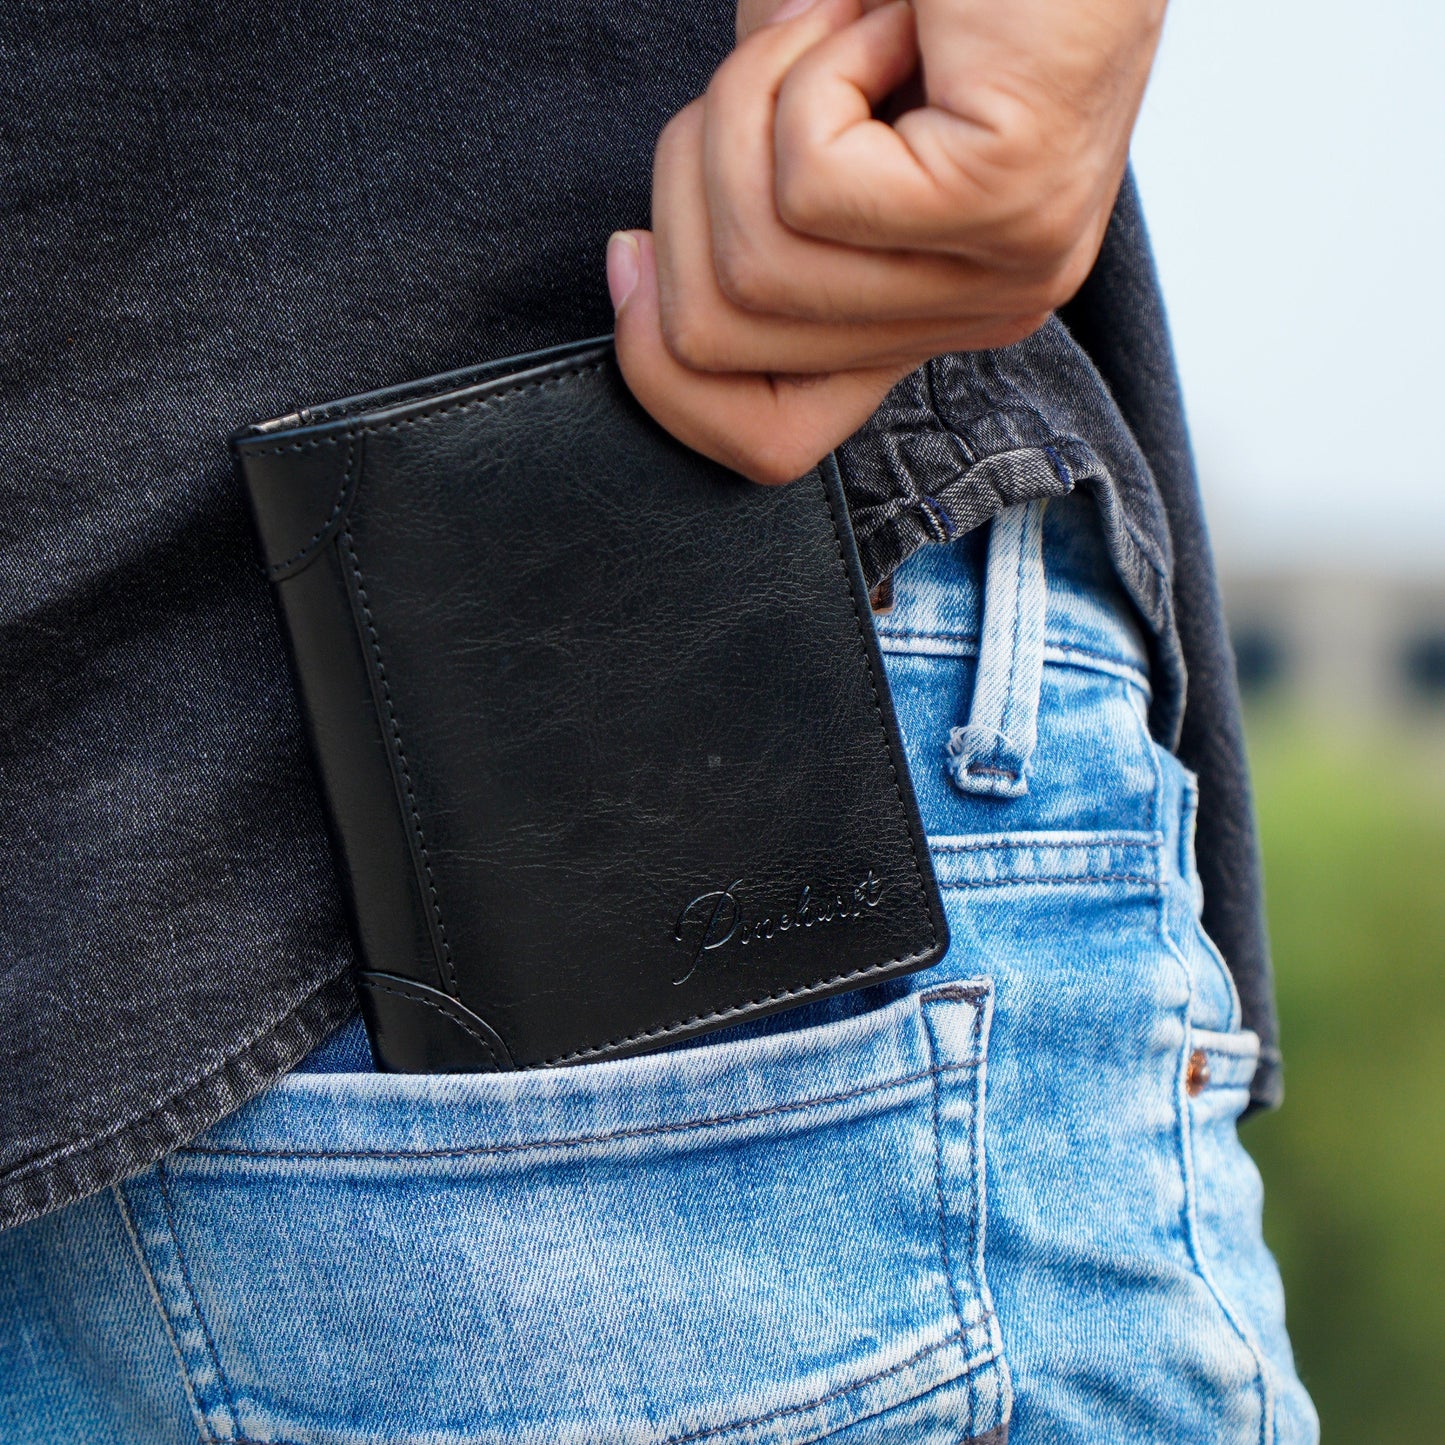 MNML - RFID Blocking Vegan Leather Wallet